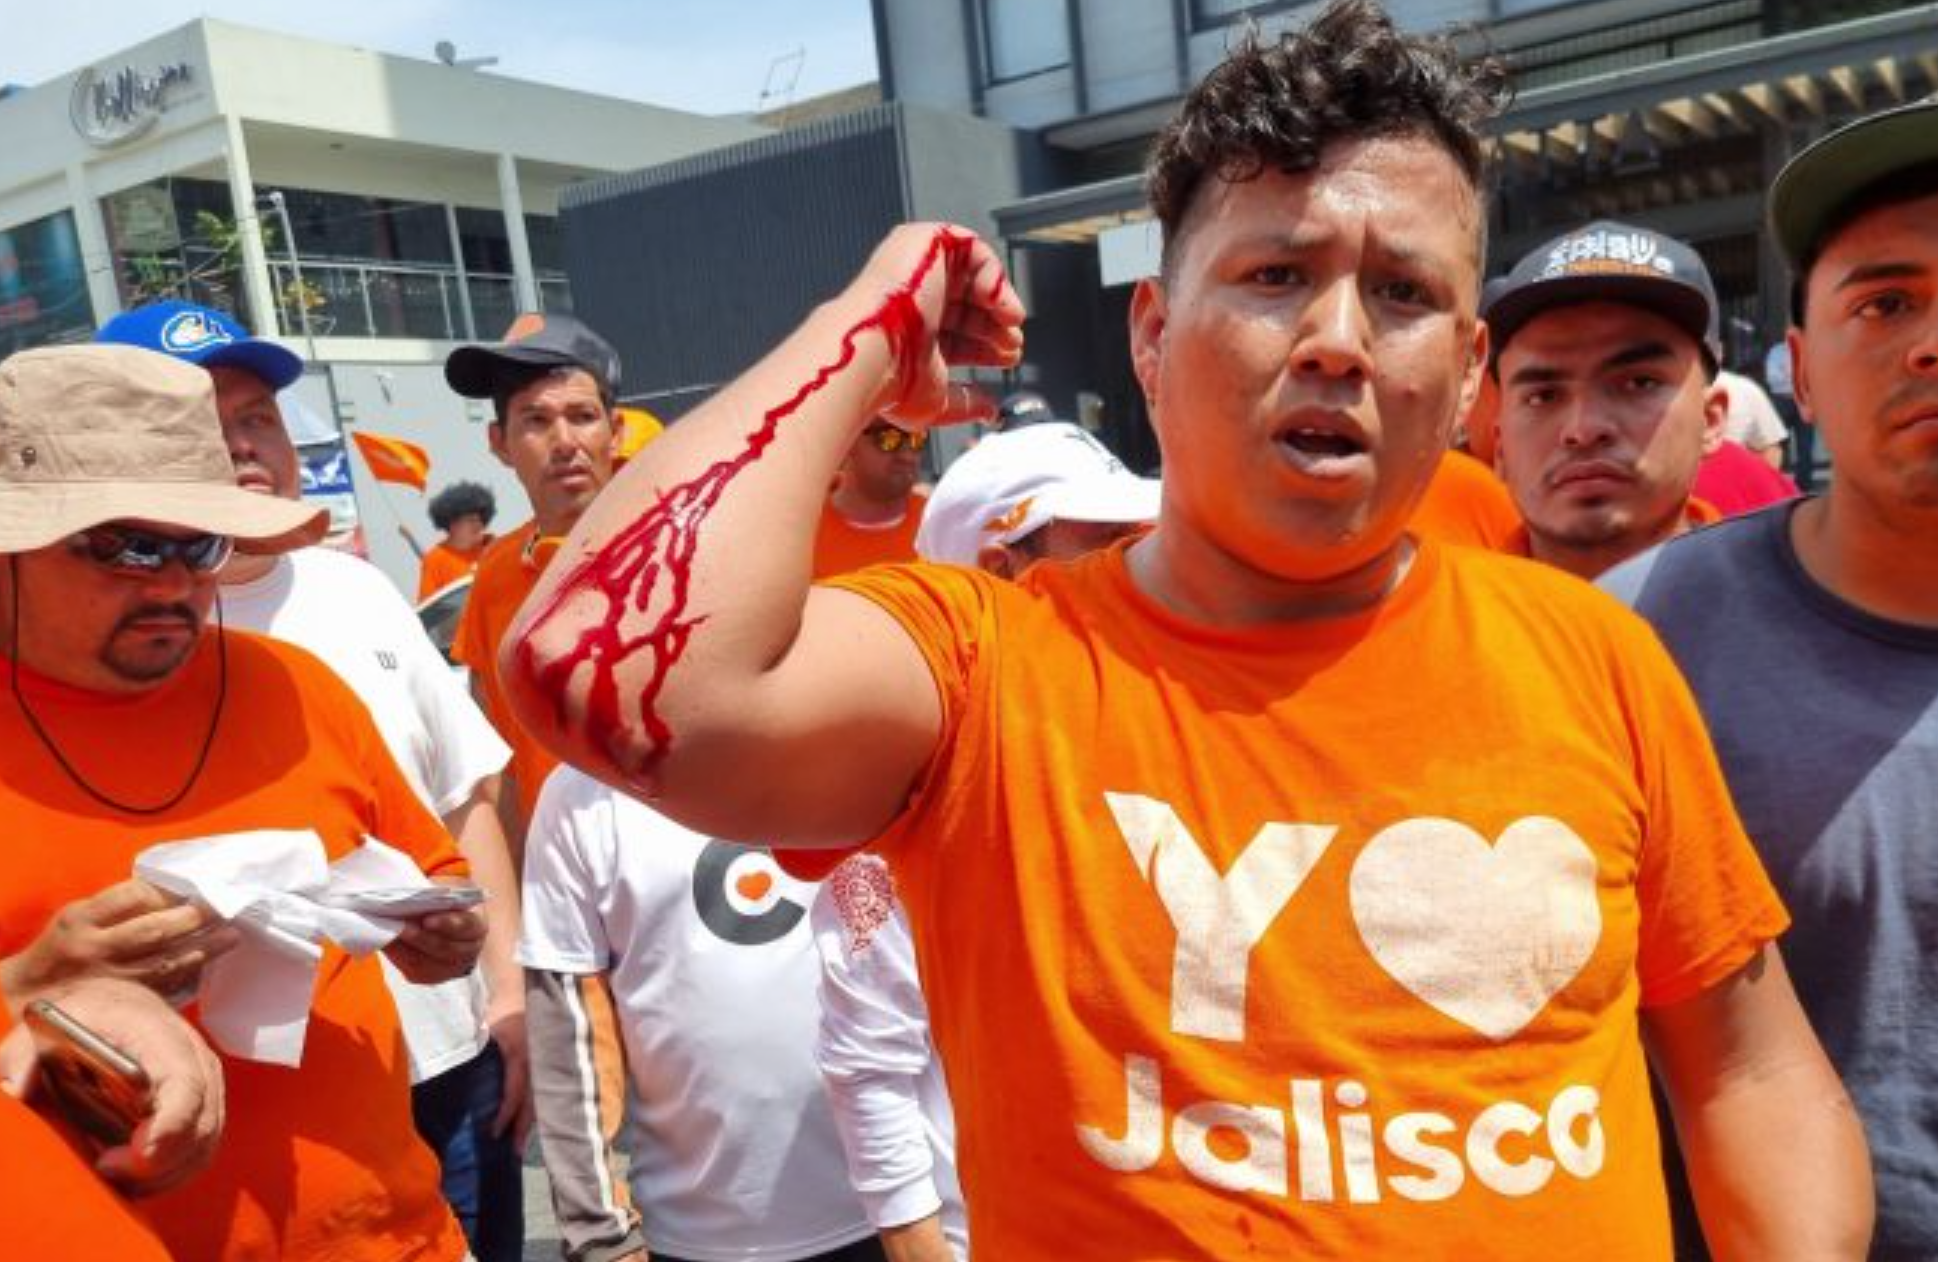 Pelea entre simpatizantes de MC y Morena en Jalisco antes de debate (VIDEO)